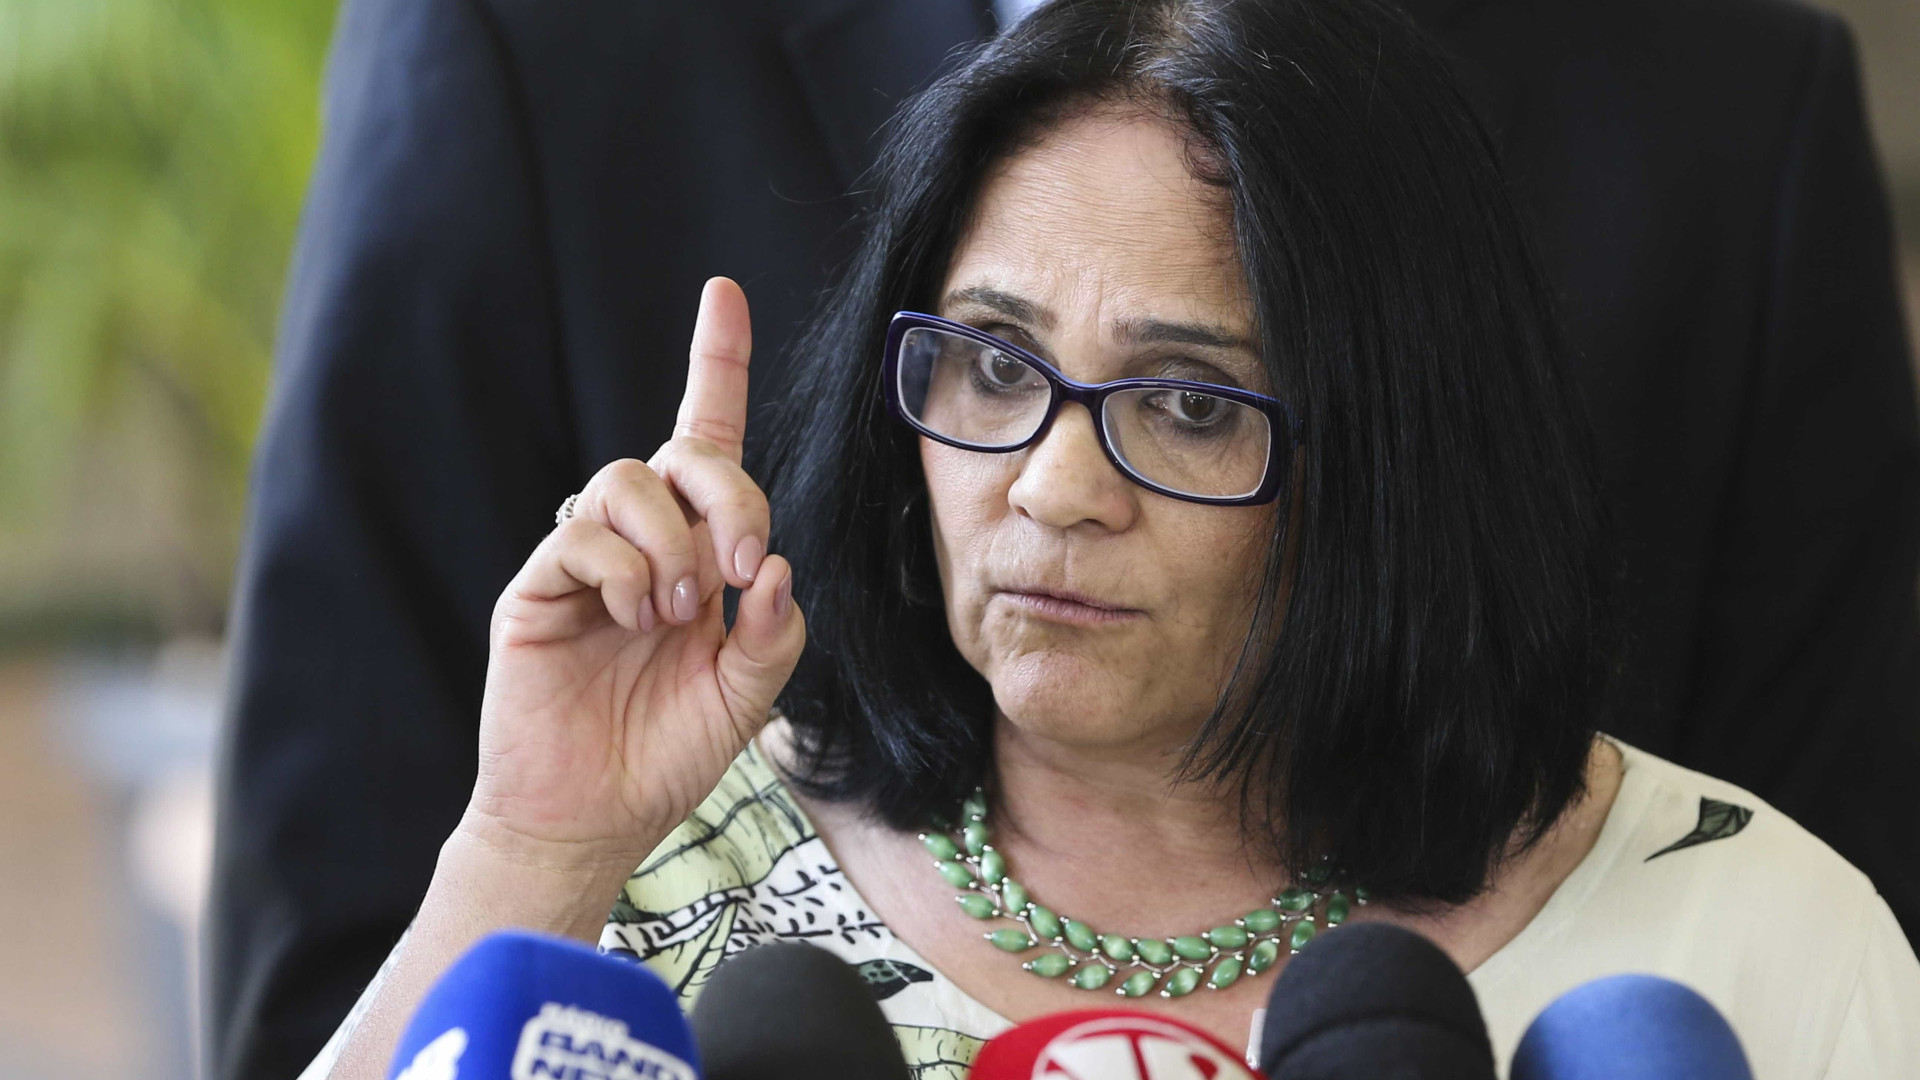 Ministra Damares Alves revela que foi violentada por dois pastores